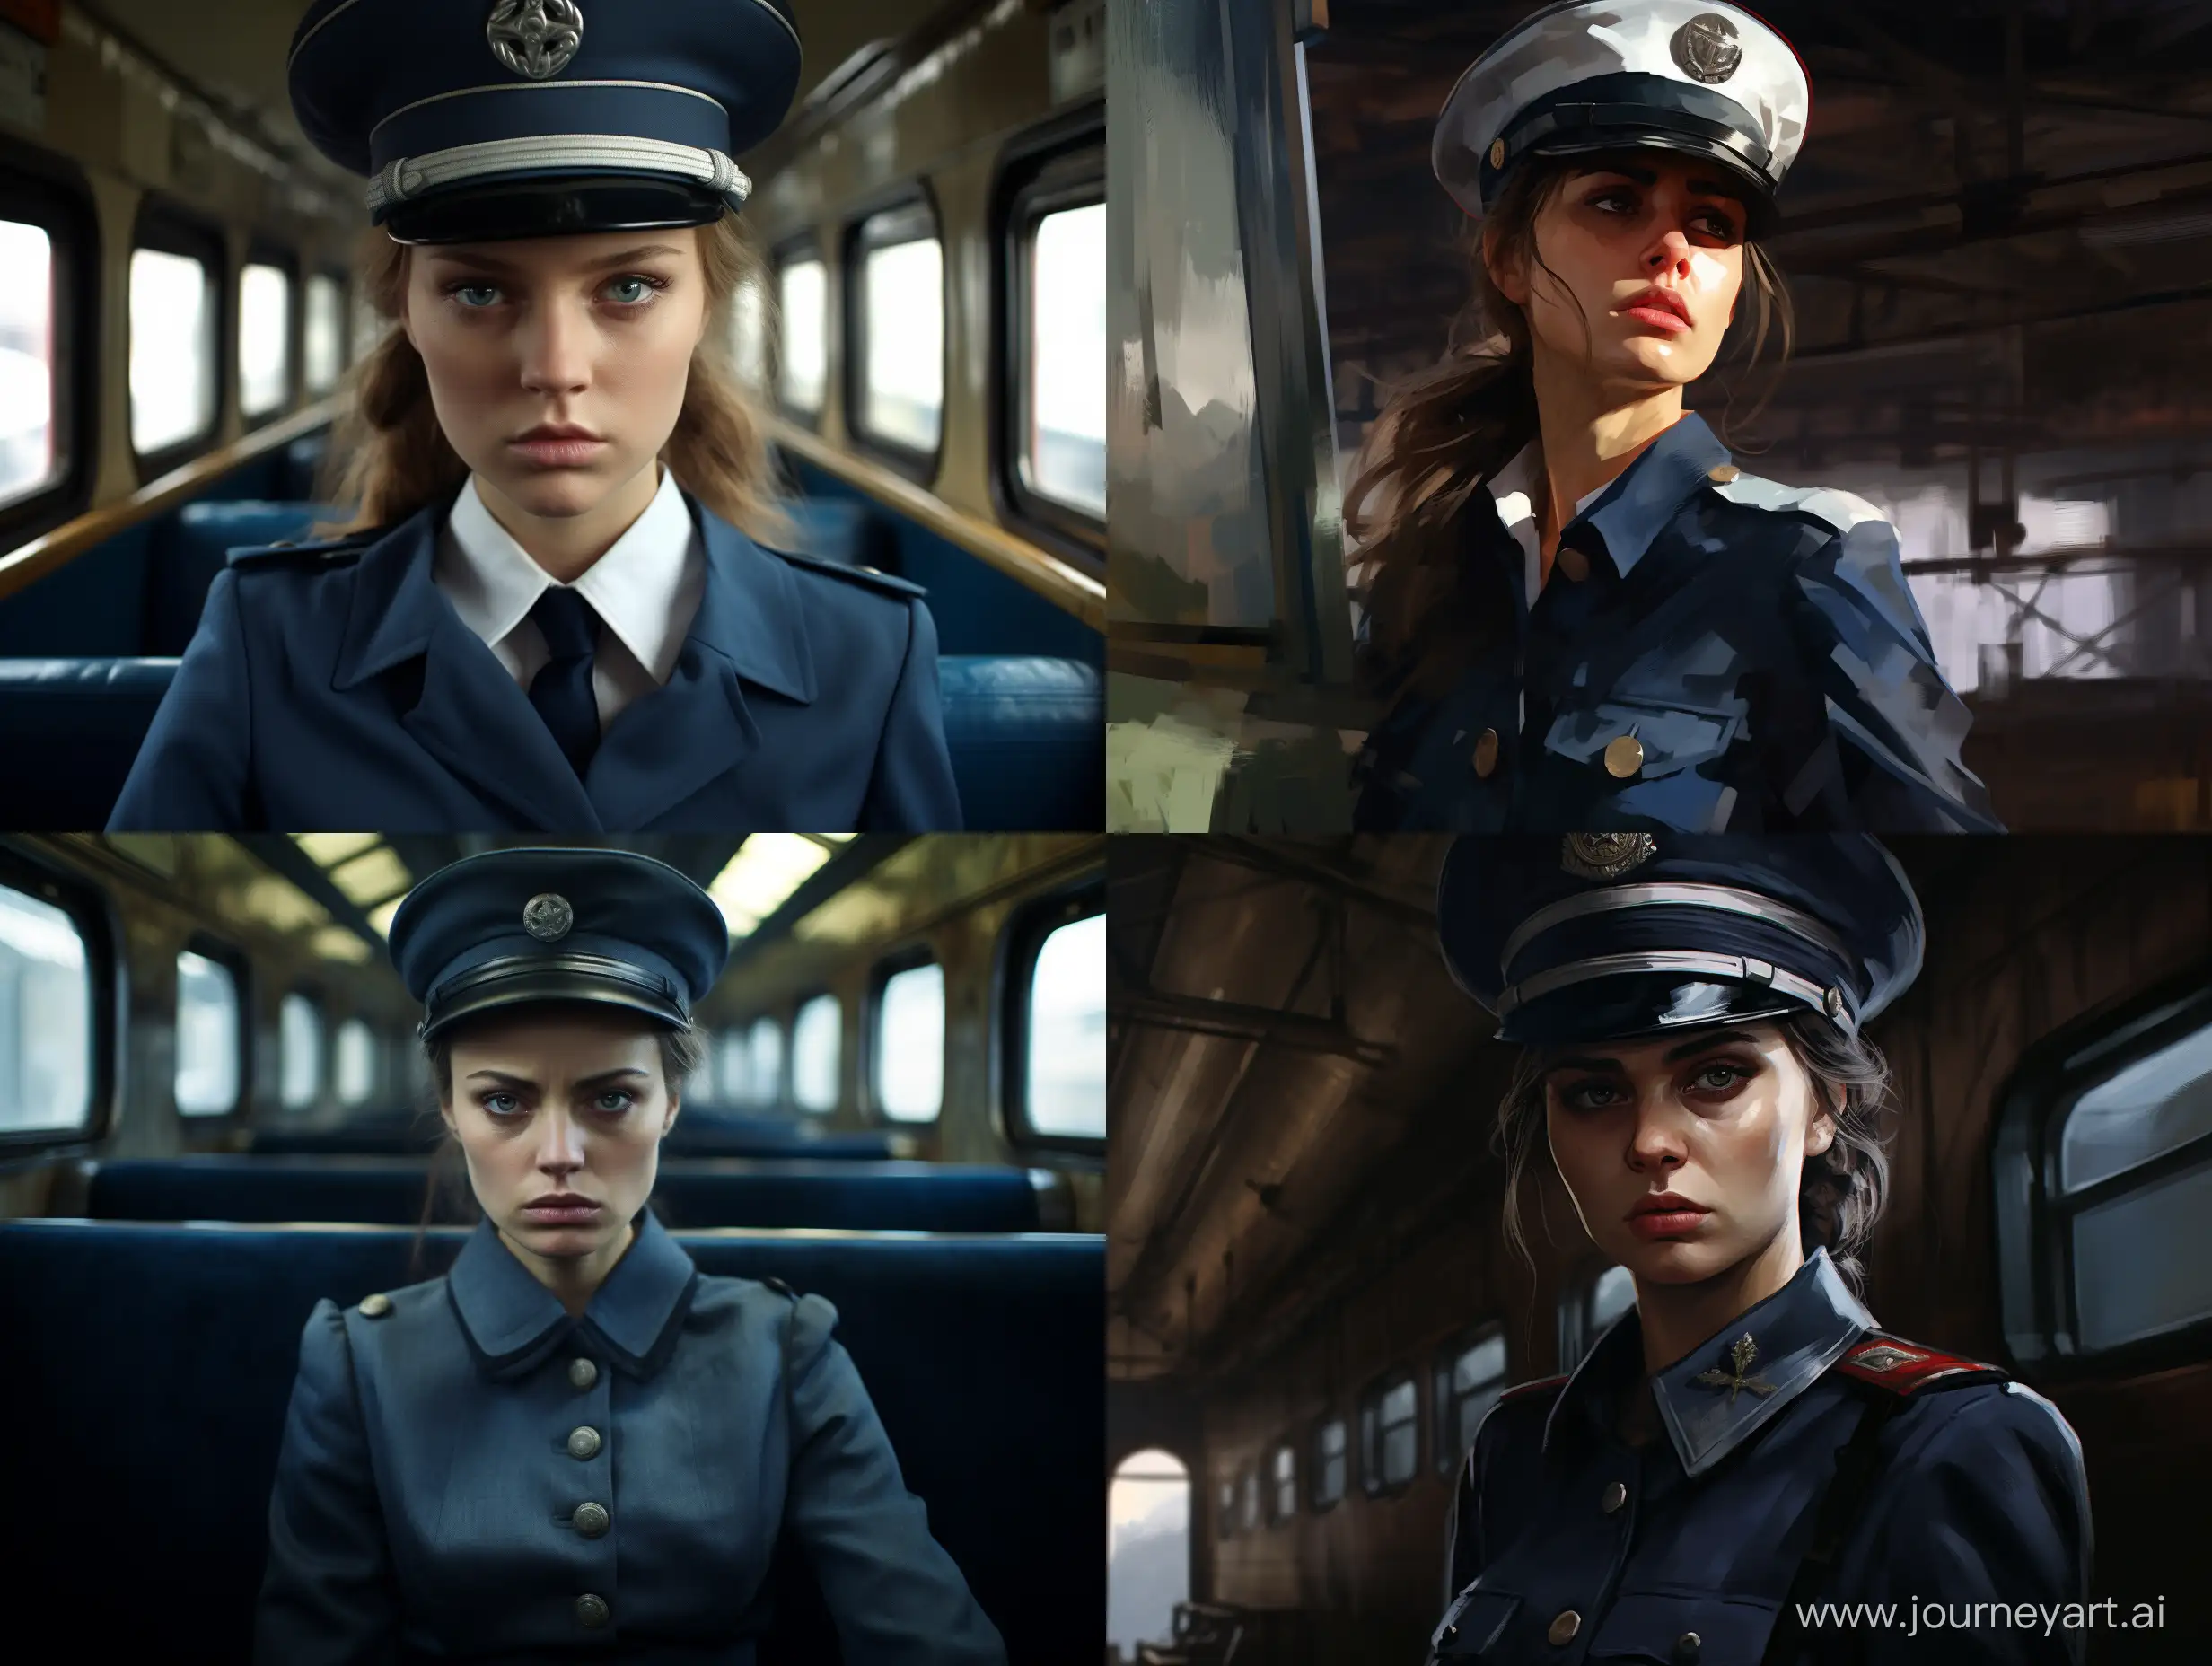 злая проводница поезда, женщина, пилотка, одна, русская, гнев, голубая форма, головной убор пилотка